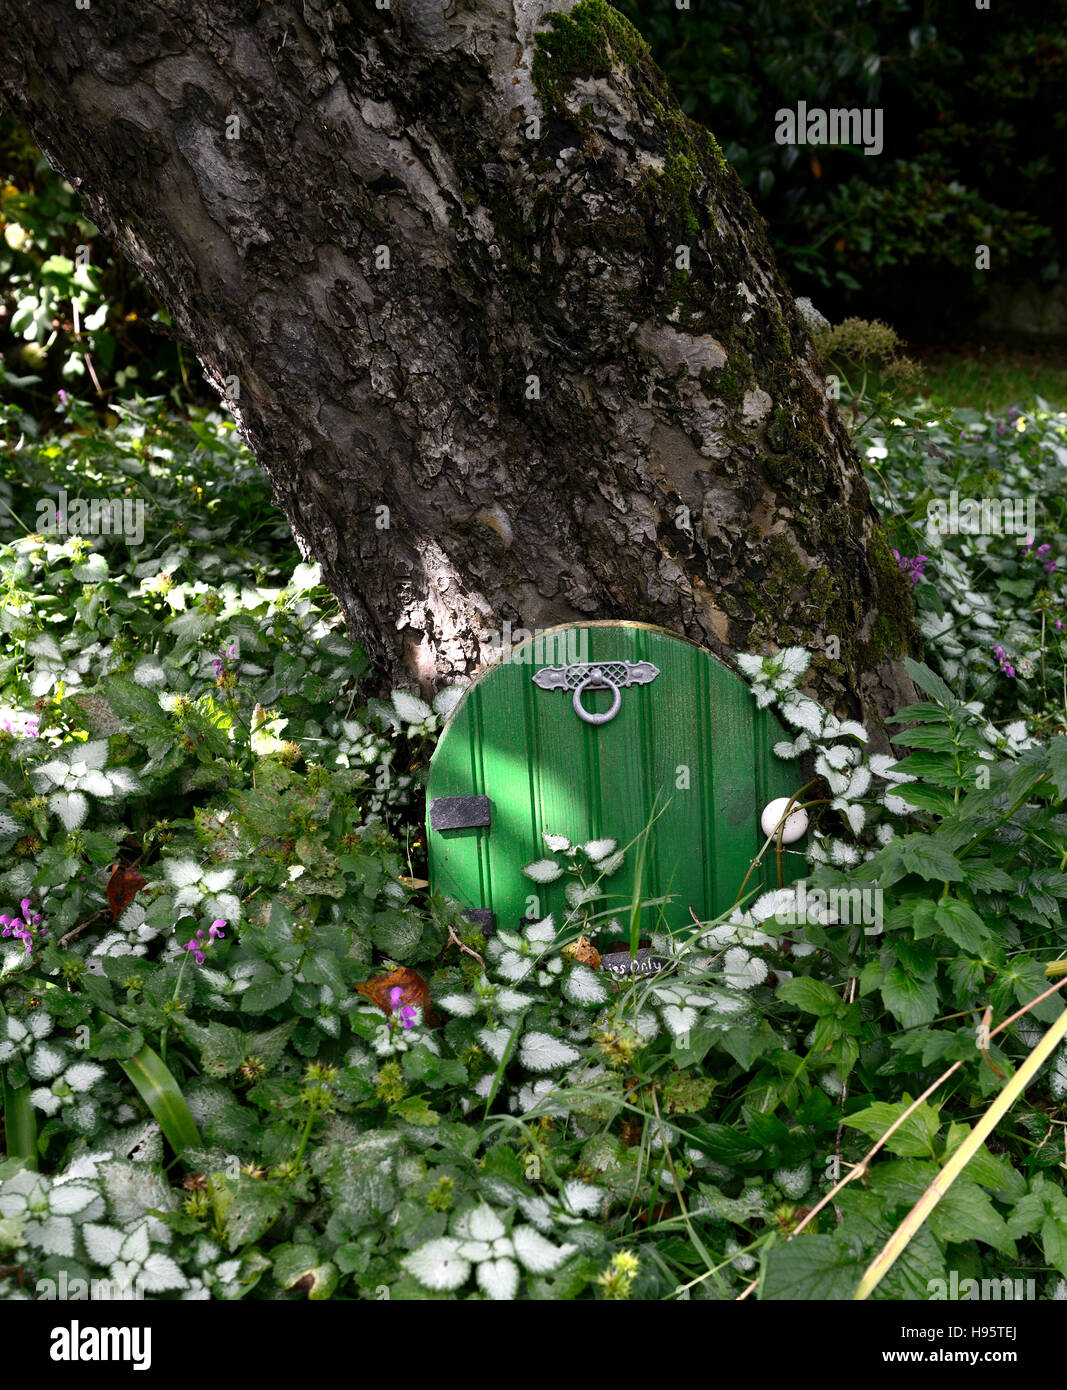 Porte chambre fée arbre décoration de jardin Décorez l'extérieur amusant  nain miniature fantasy faire croire fairies accueil Floral RM Photo Stock -  Alamy